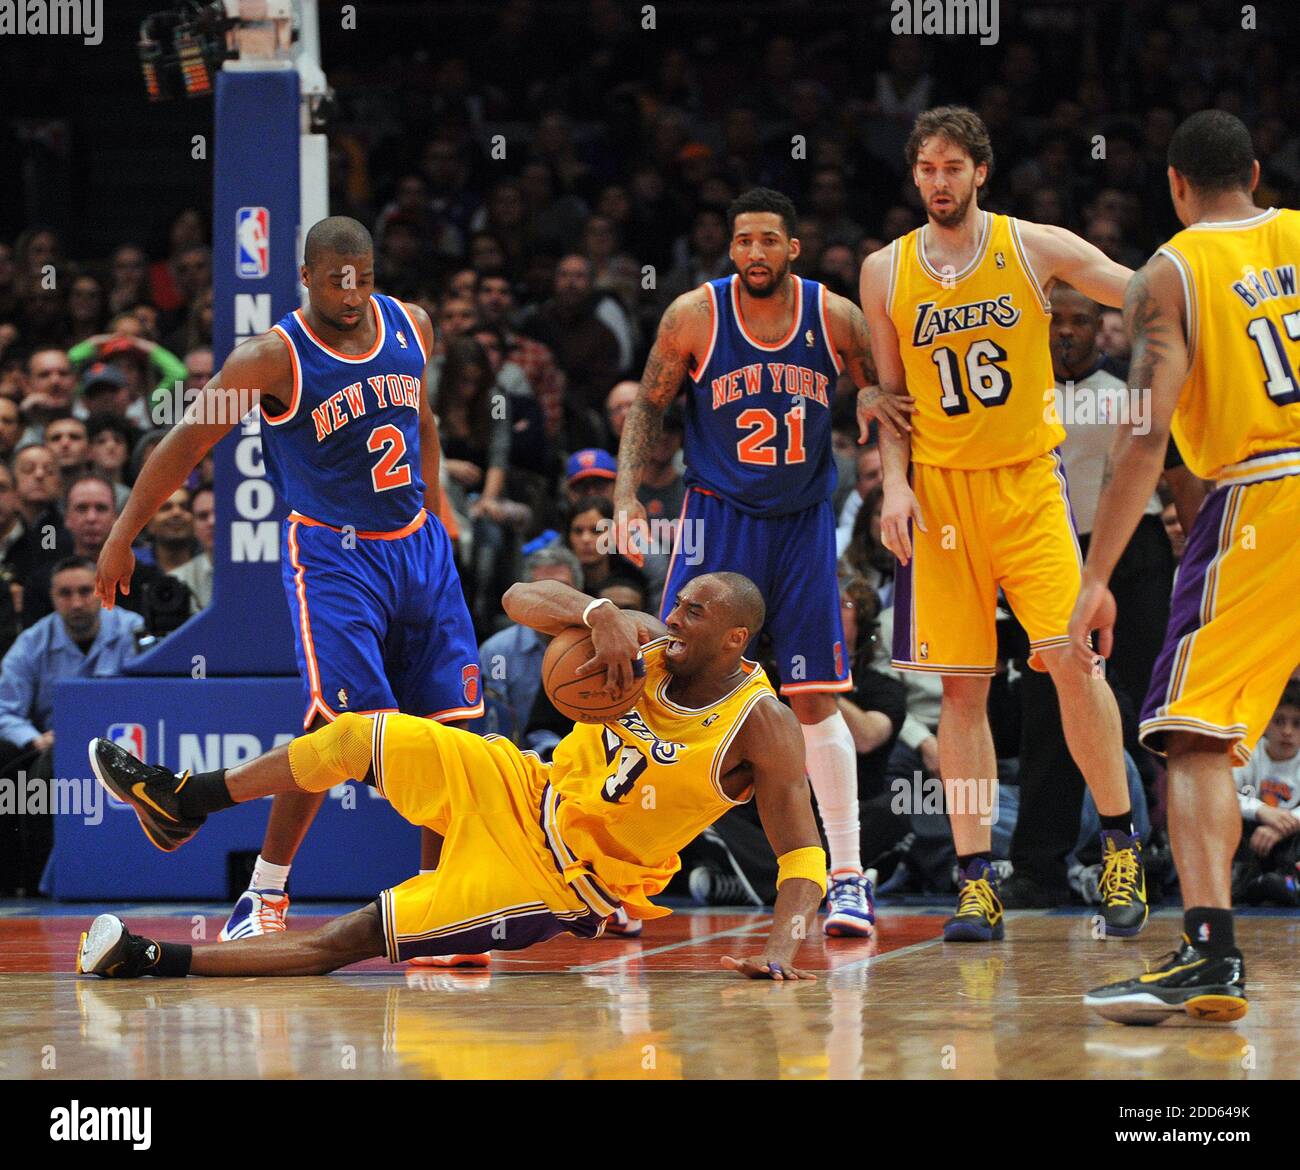 epufloor: Kobe Bryant, Lakers get Christmas revenge vs. Knicks